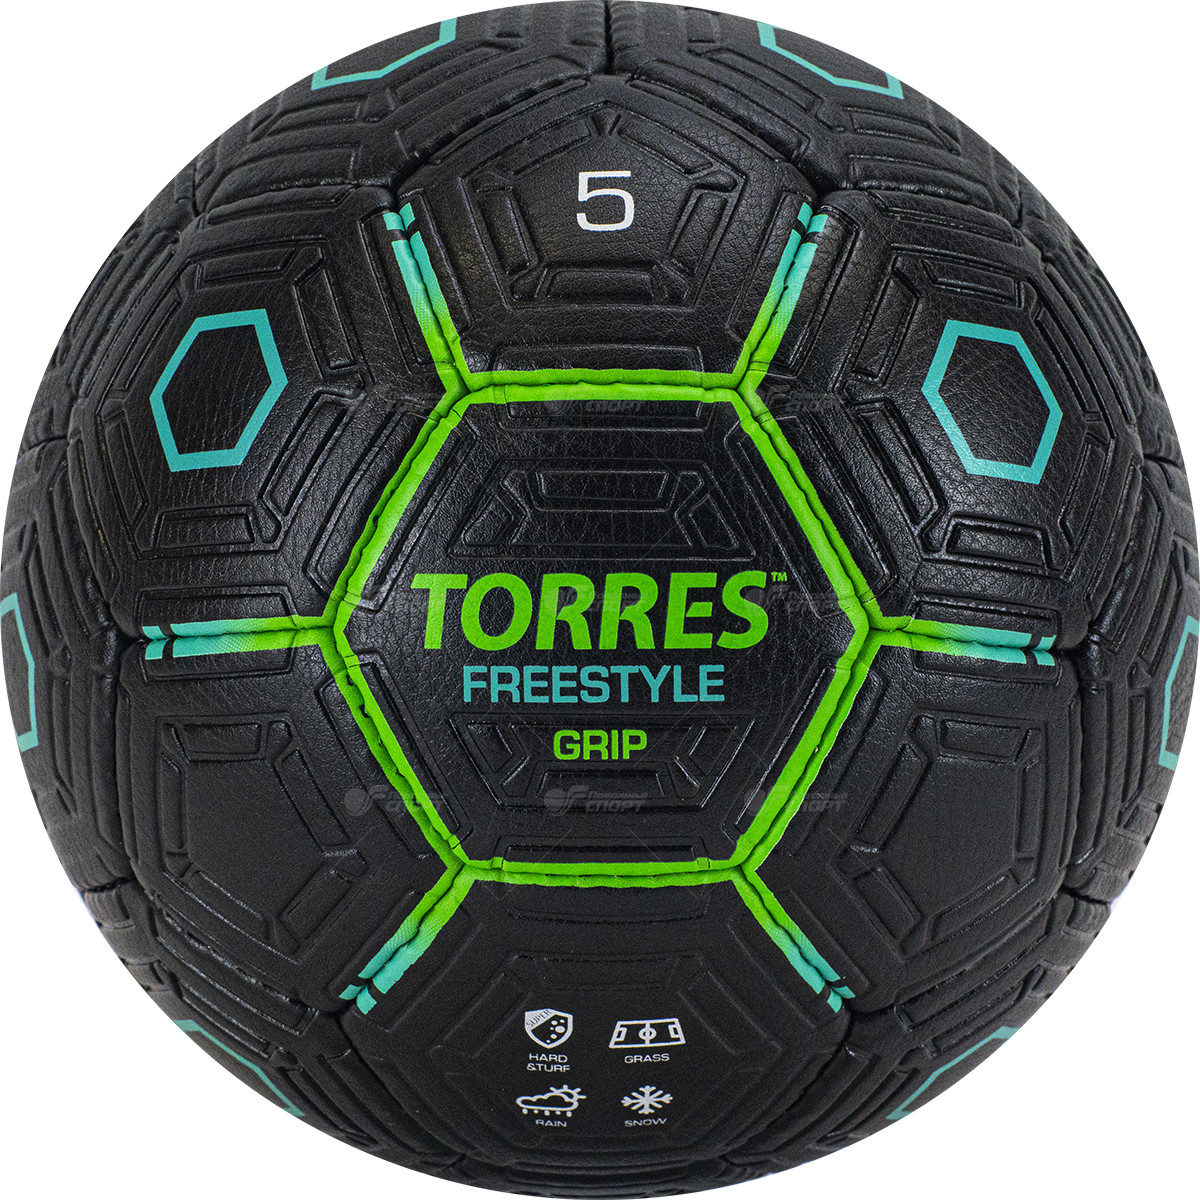 Мяч ф/б Torres Freestyle Grip арт.F320765 р.5